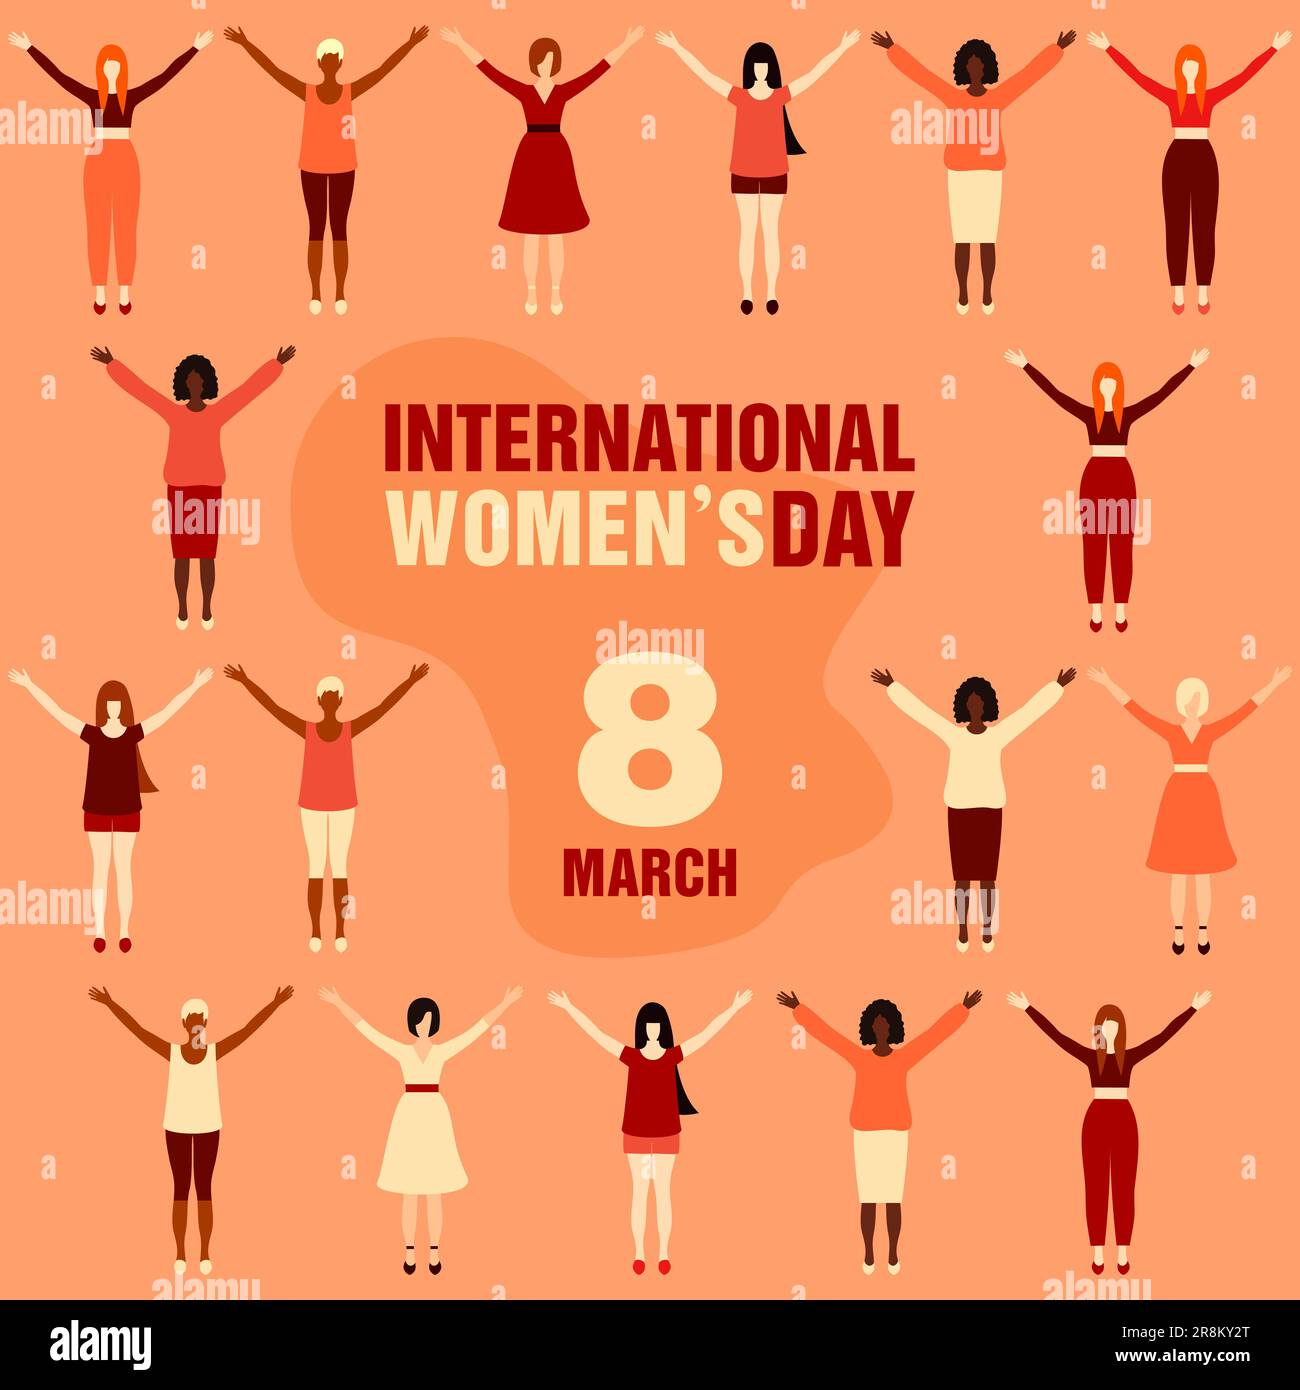 Internationaler Frauentag. Frauen unterschiedlicher ethnischer Herkunft in voller Körpergröße mit erhobenen Händen. Konzept der Freundschaft der Frau, Unterstützung und Bewegung für Wom Stock Vektor